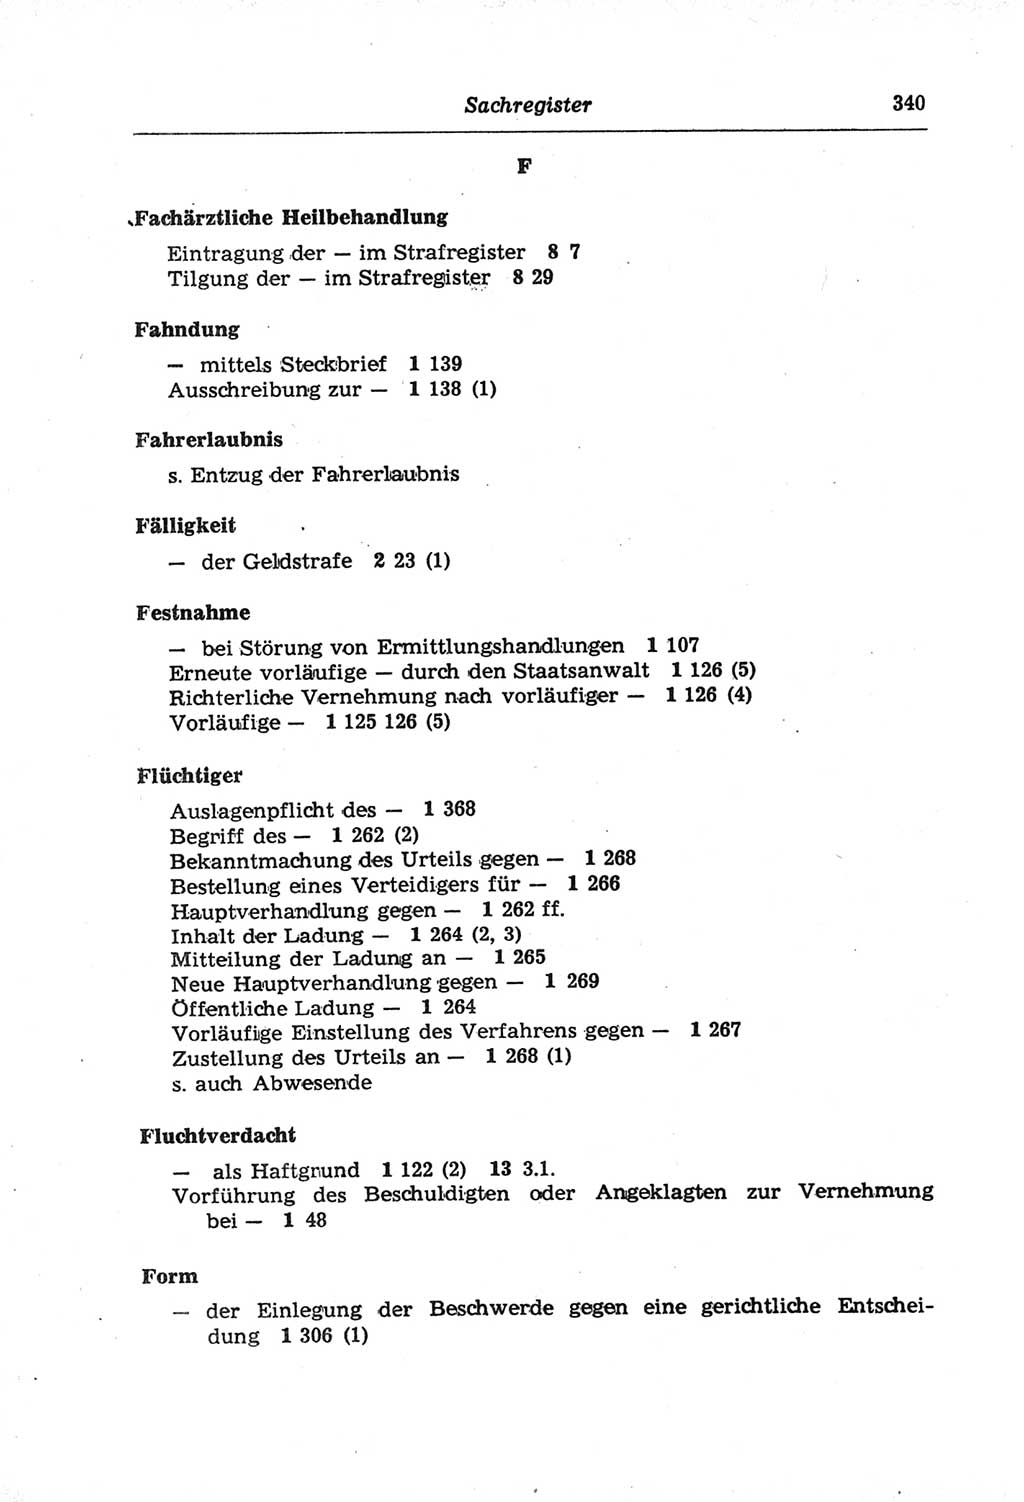 Strafprozeßordnung (StPO) der Deutschen Demokratischen Republik (DDR) und angrenzende Gesetze und Bestimmungen 1968, Seite 340 (StPO Ges. Bstgn. DDR 1968, S. 340)